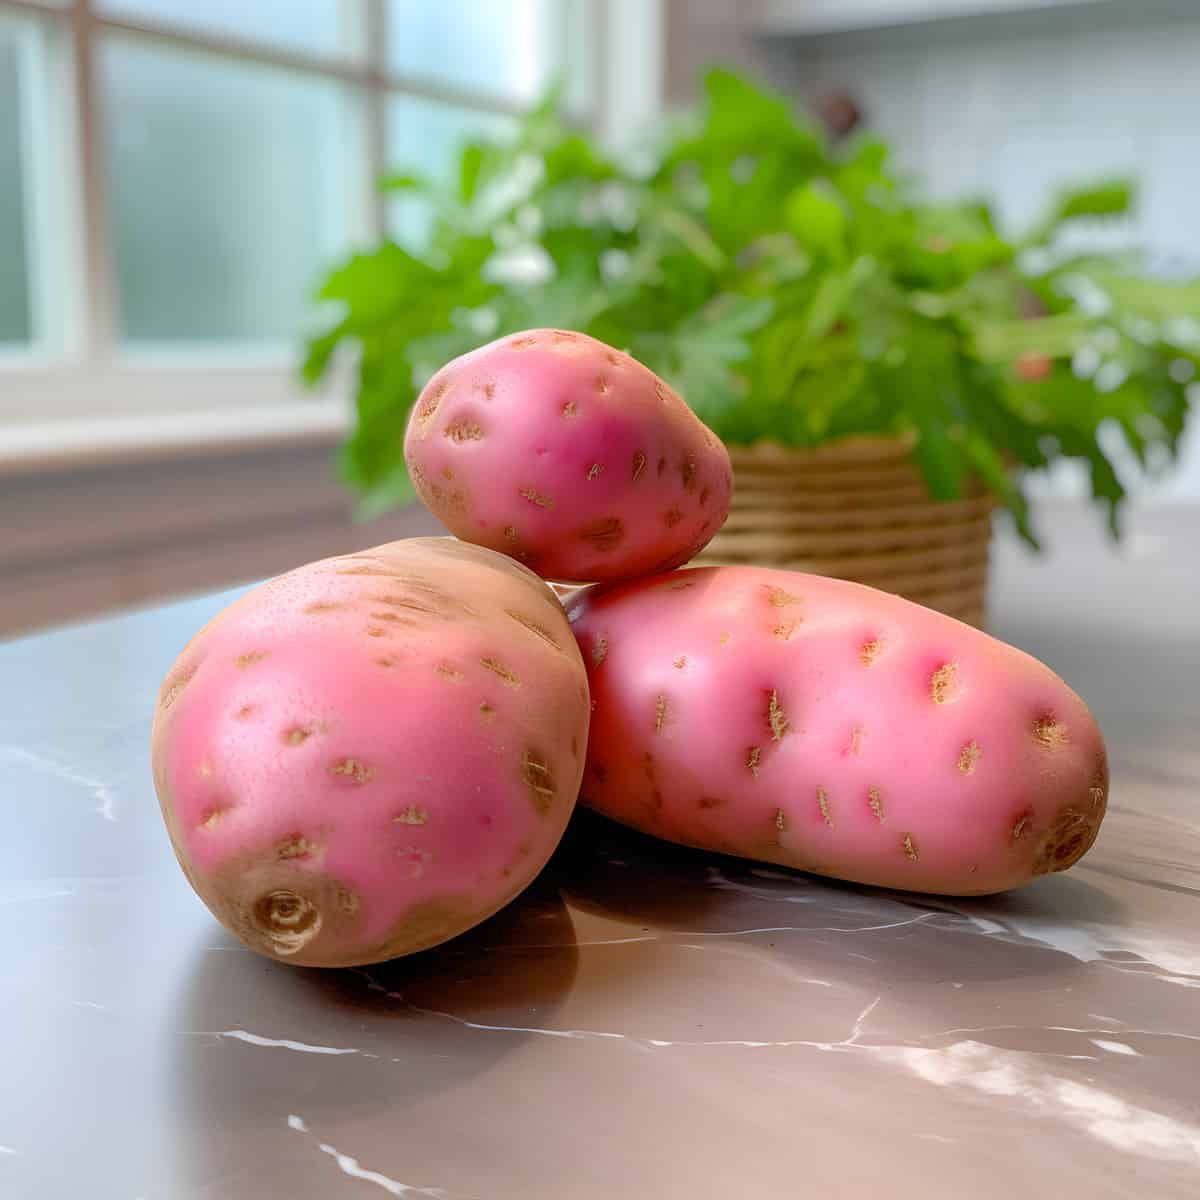 Pink Fir Apple Potatoes on a kitchen counter